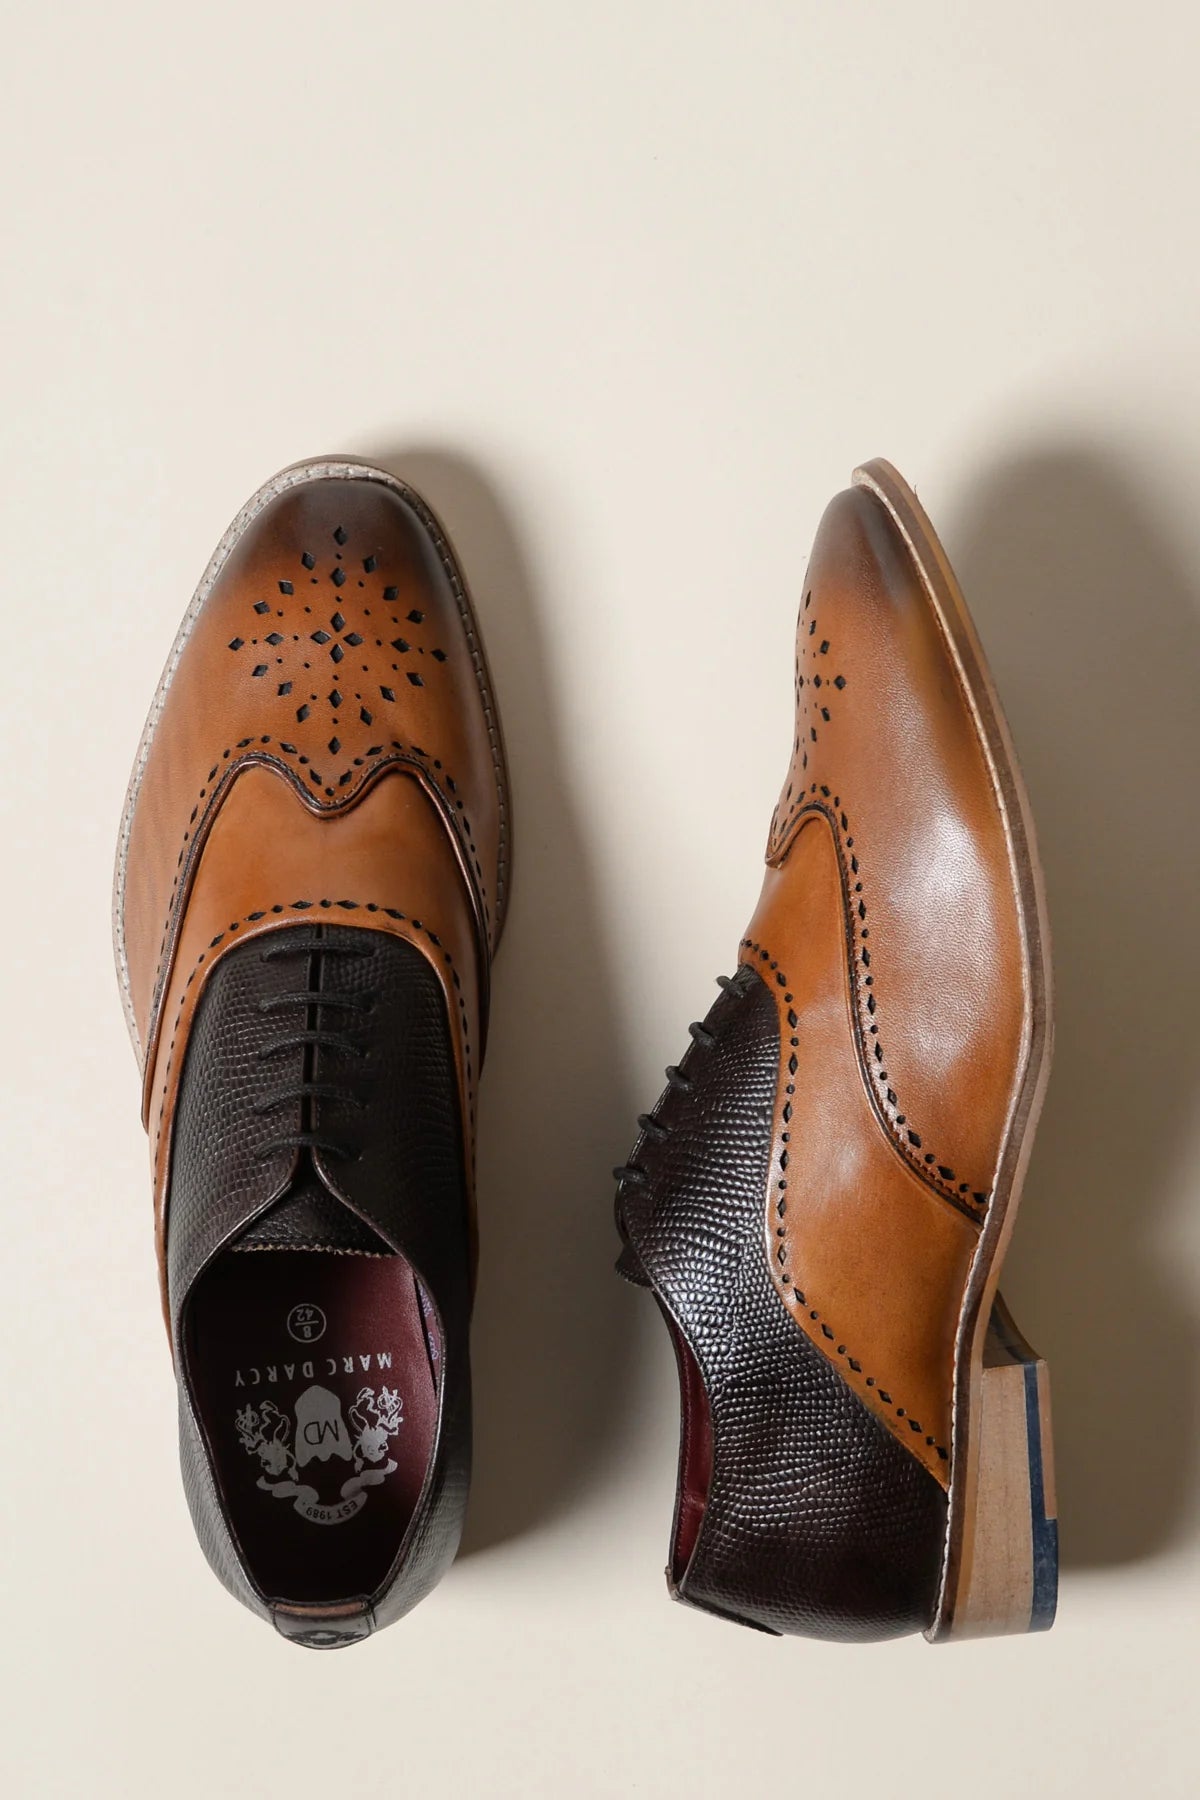 Bruine leren schoenen, Marc Darcy Ryan - Wingtip brogue